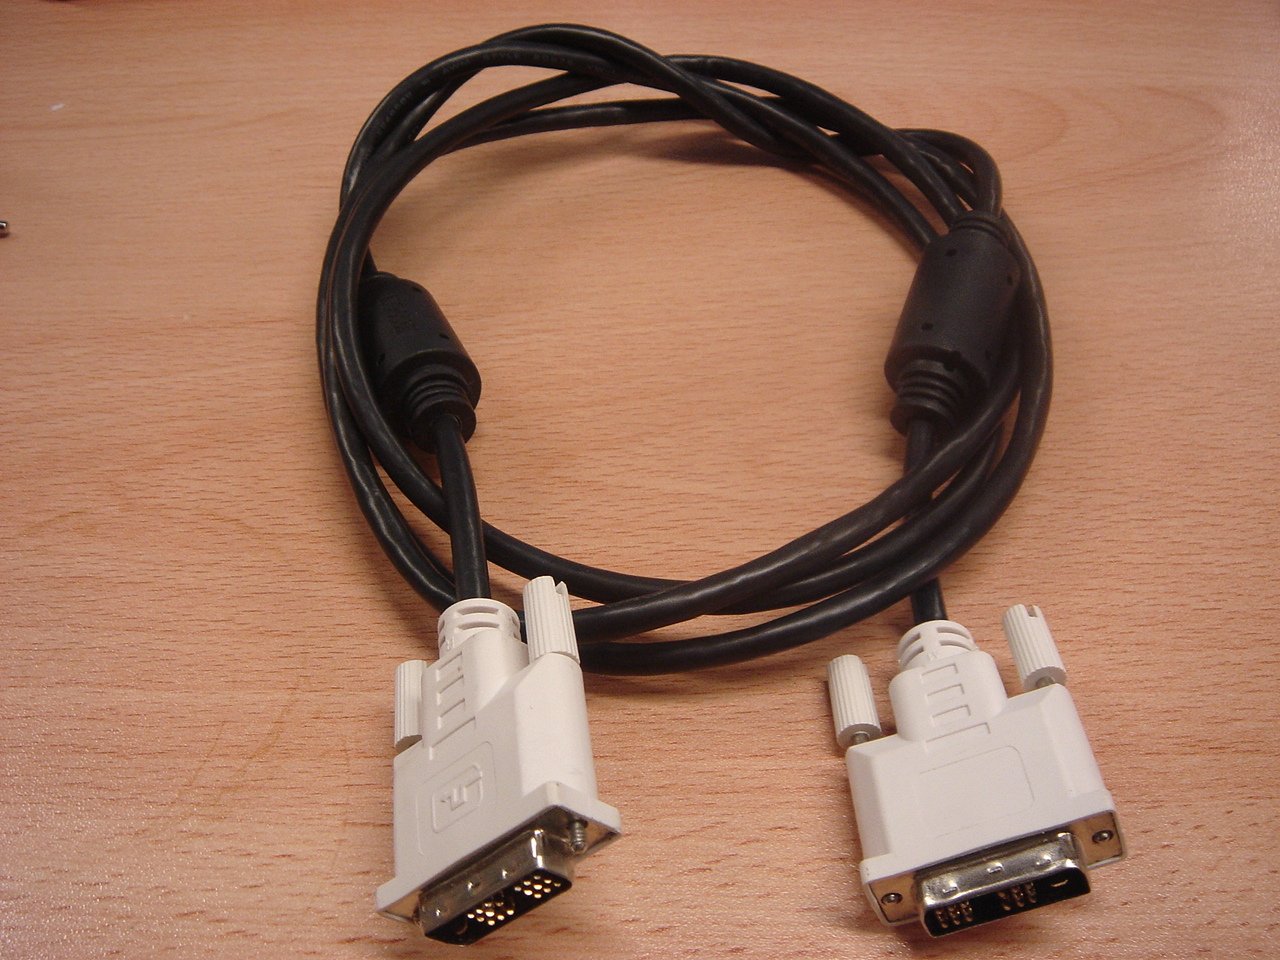 MC3290_DV-106_2m DVI Male to DVI Male Cable - Image2